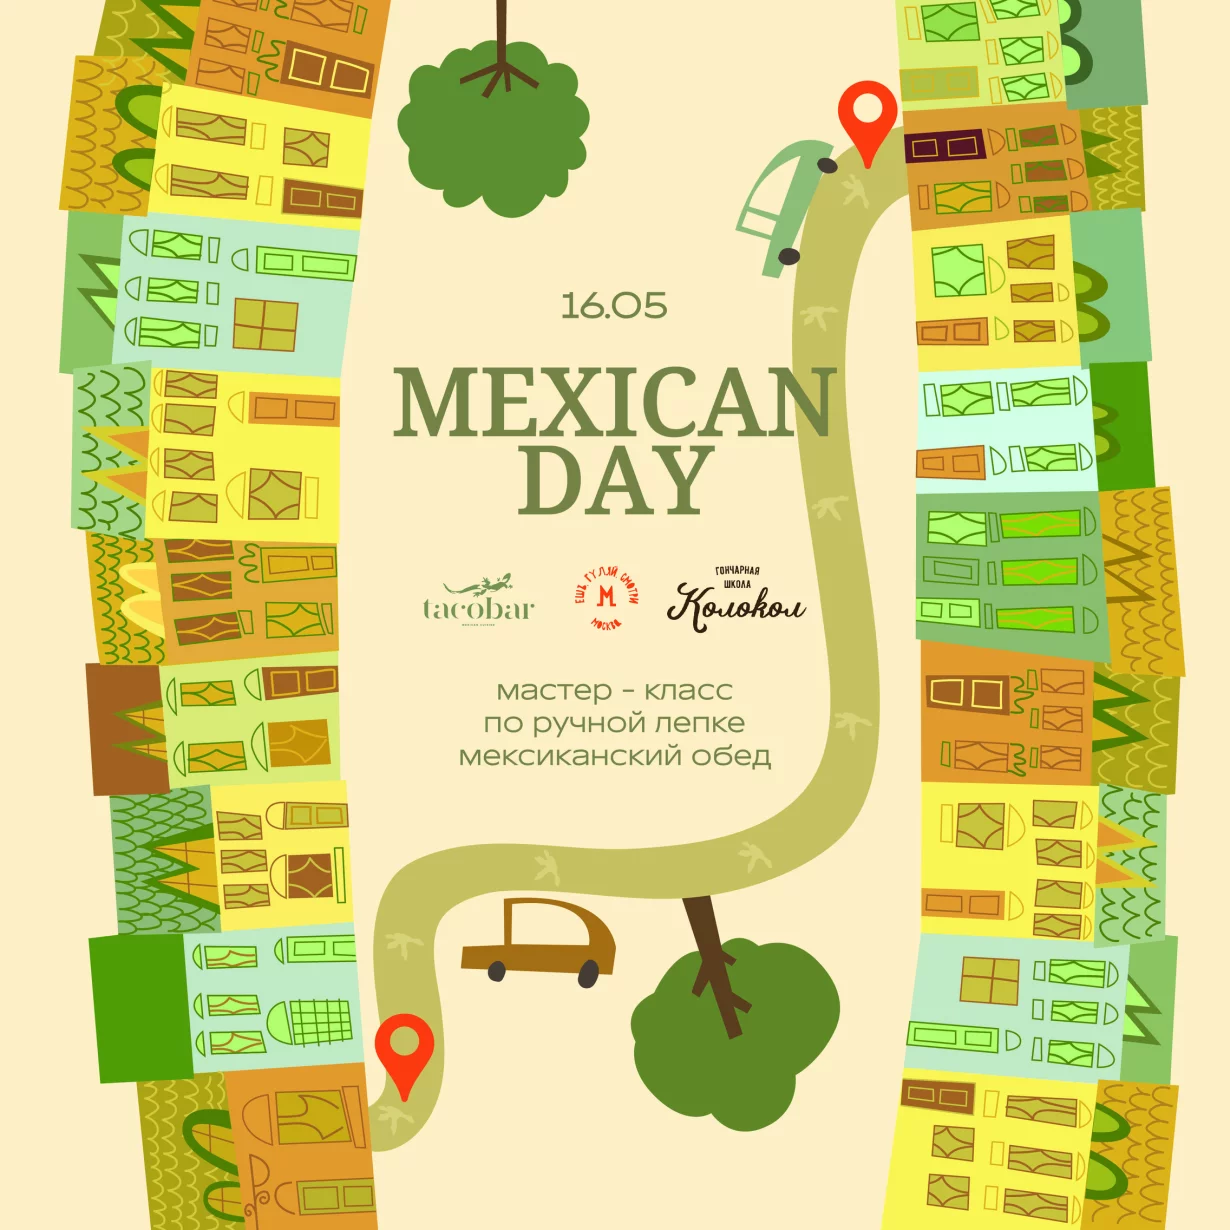 Мексиканский день: ресторан tacobar, Колокол и «Ешь, гуляй, смотри»